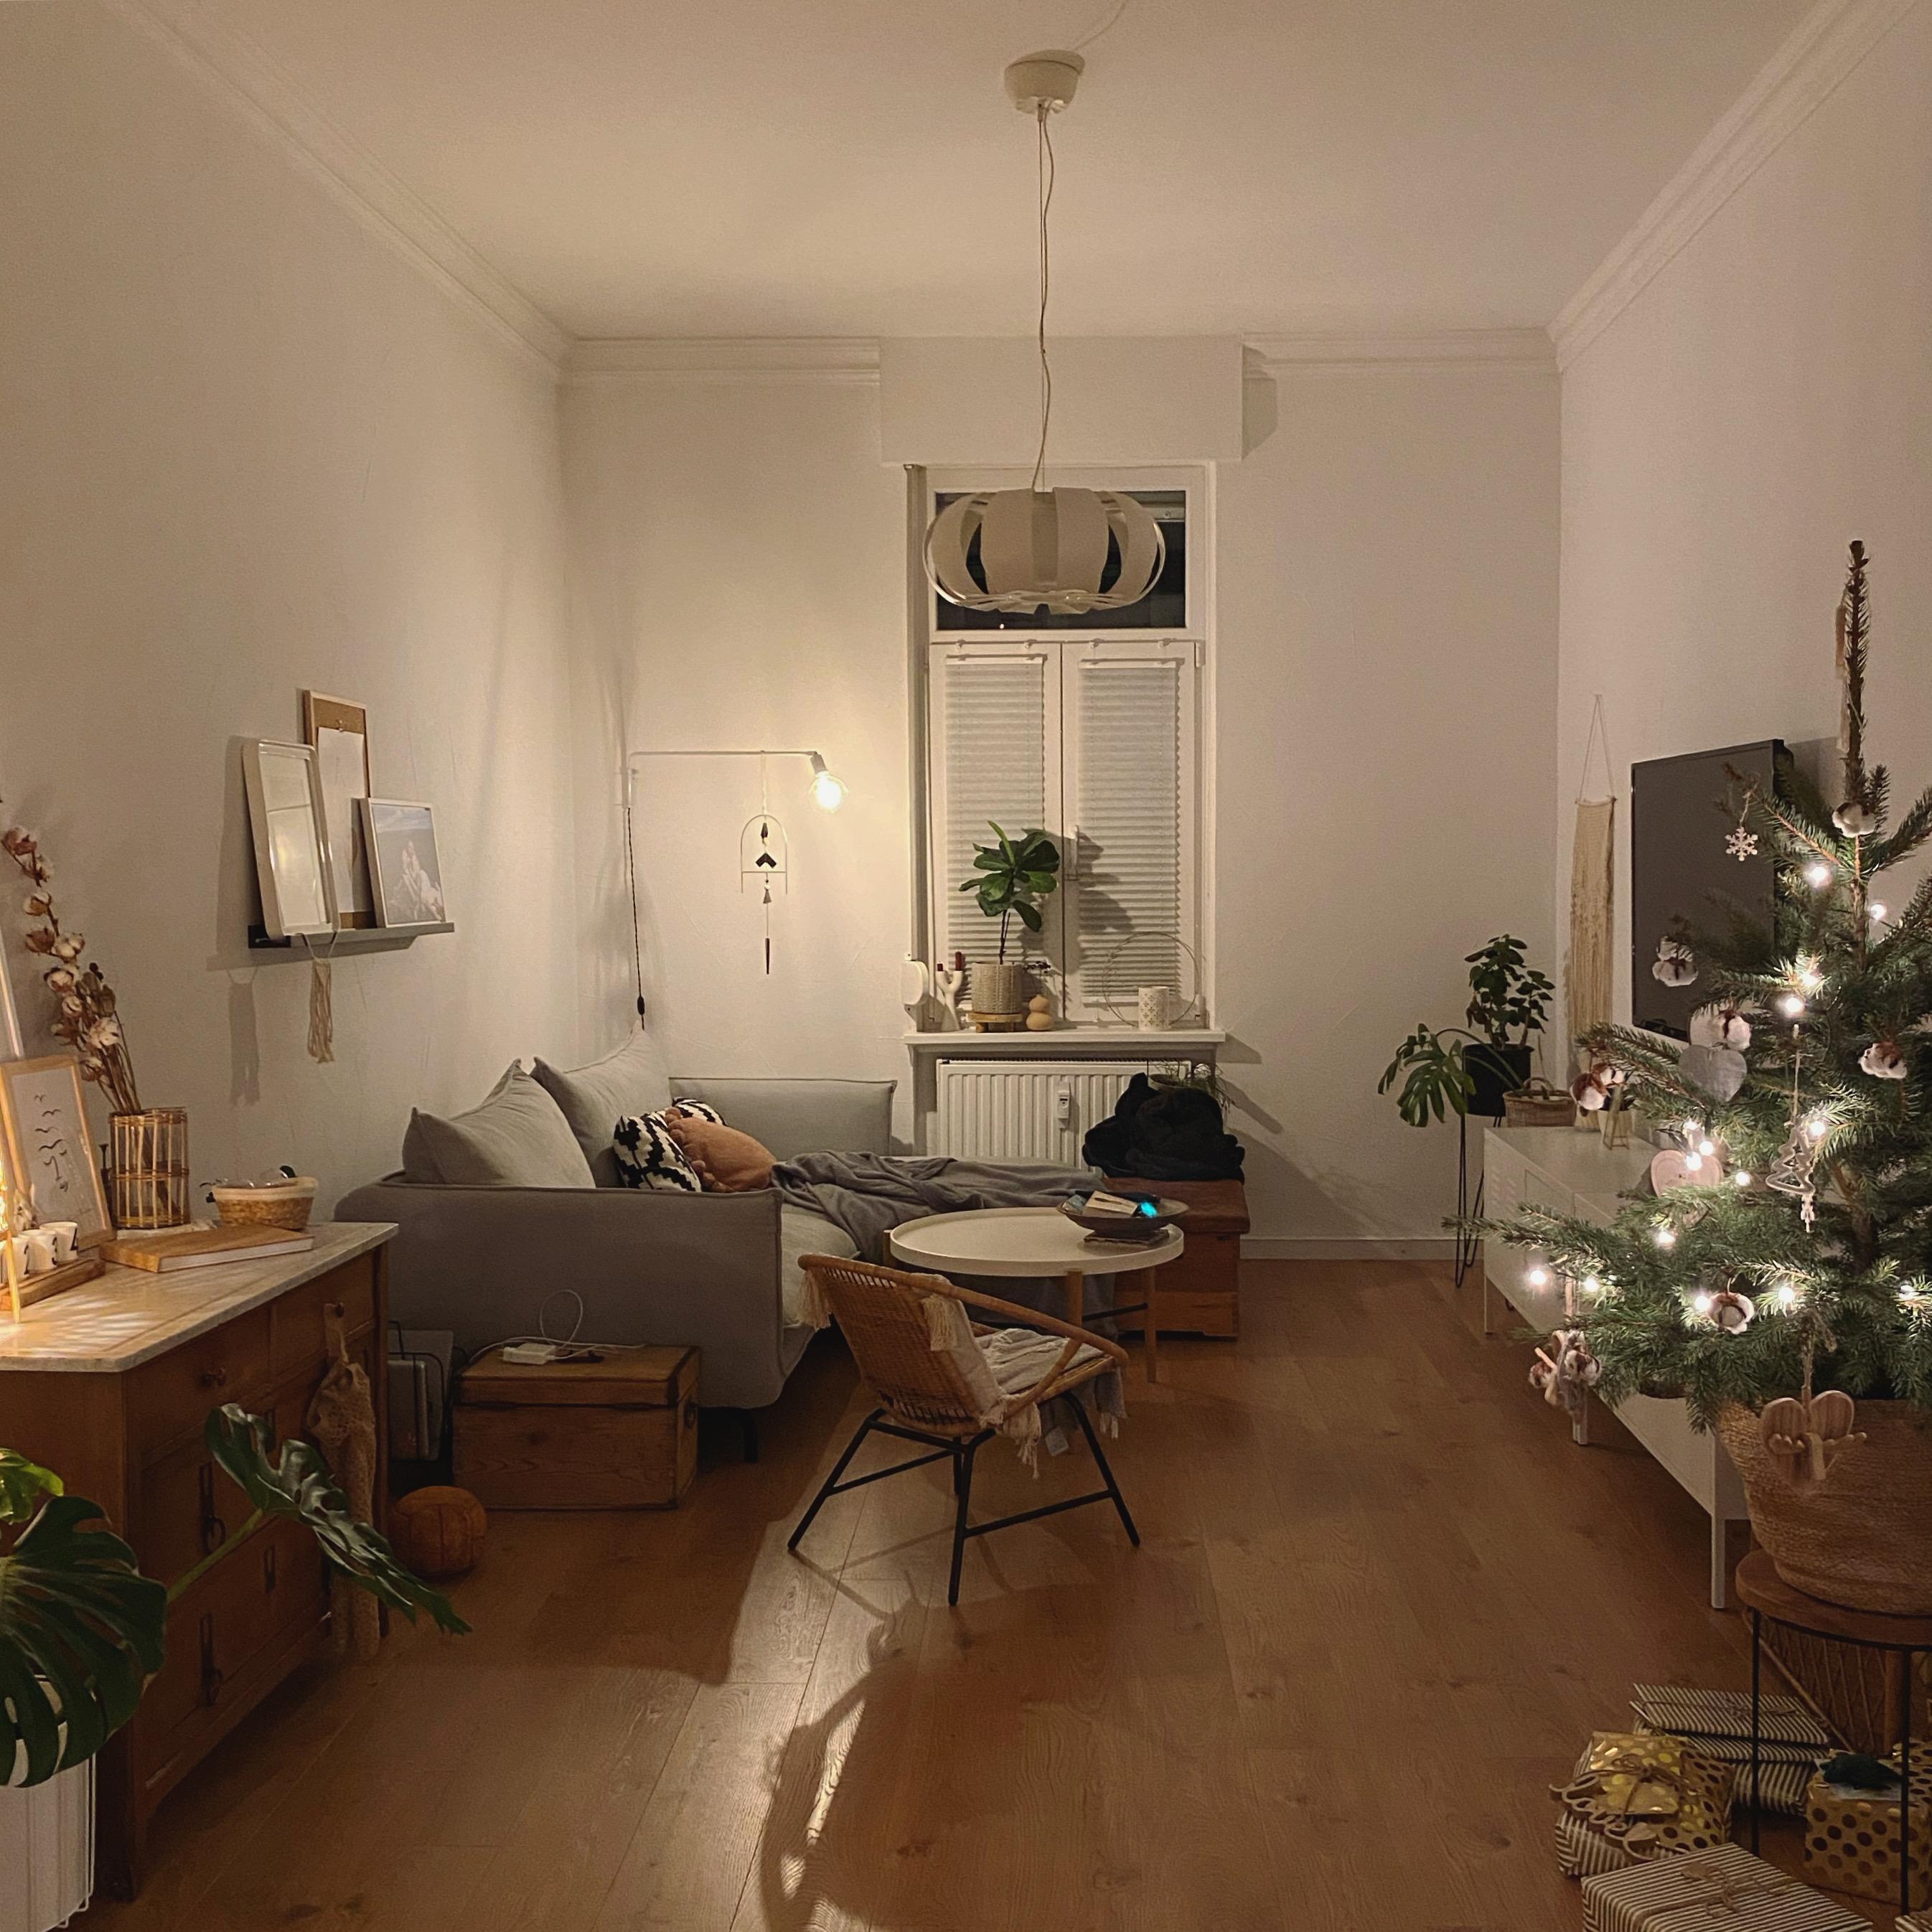 #weihnachten #weihnachtsbaum #tannenbaum #wohnzimmer #gemütlich #weihnachtsdeko #couchstyle #couchmagazin